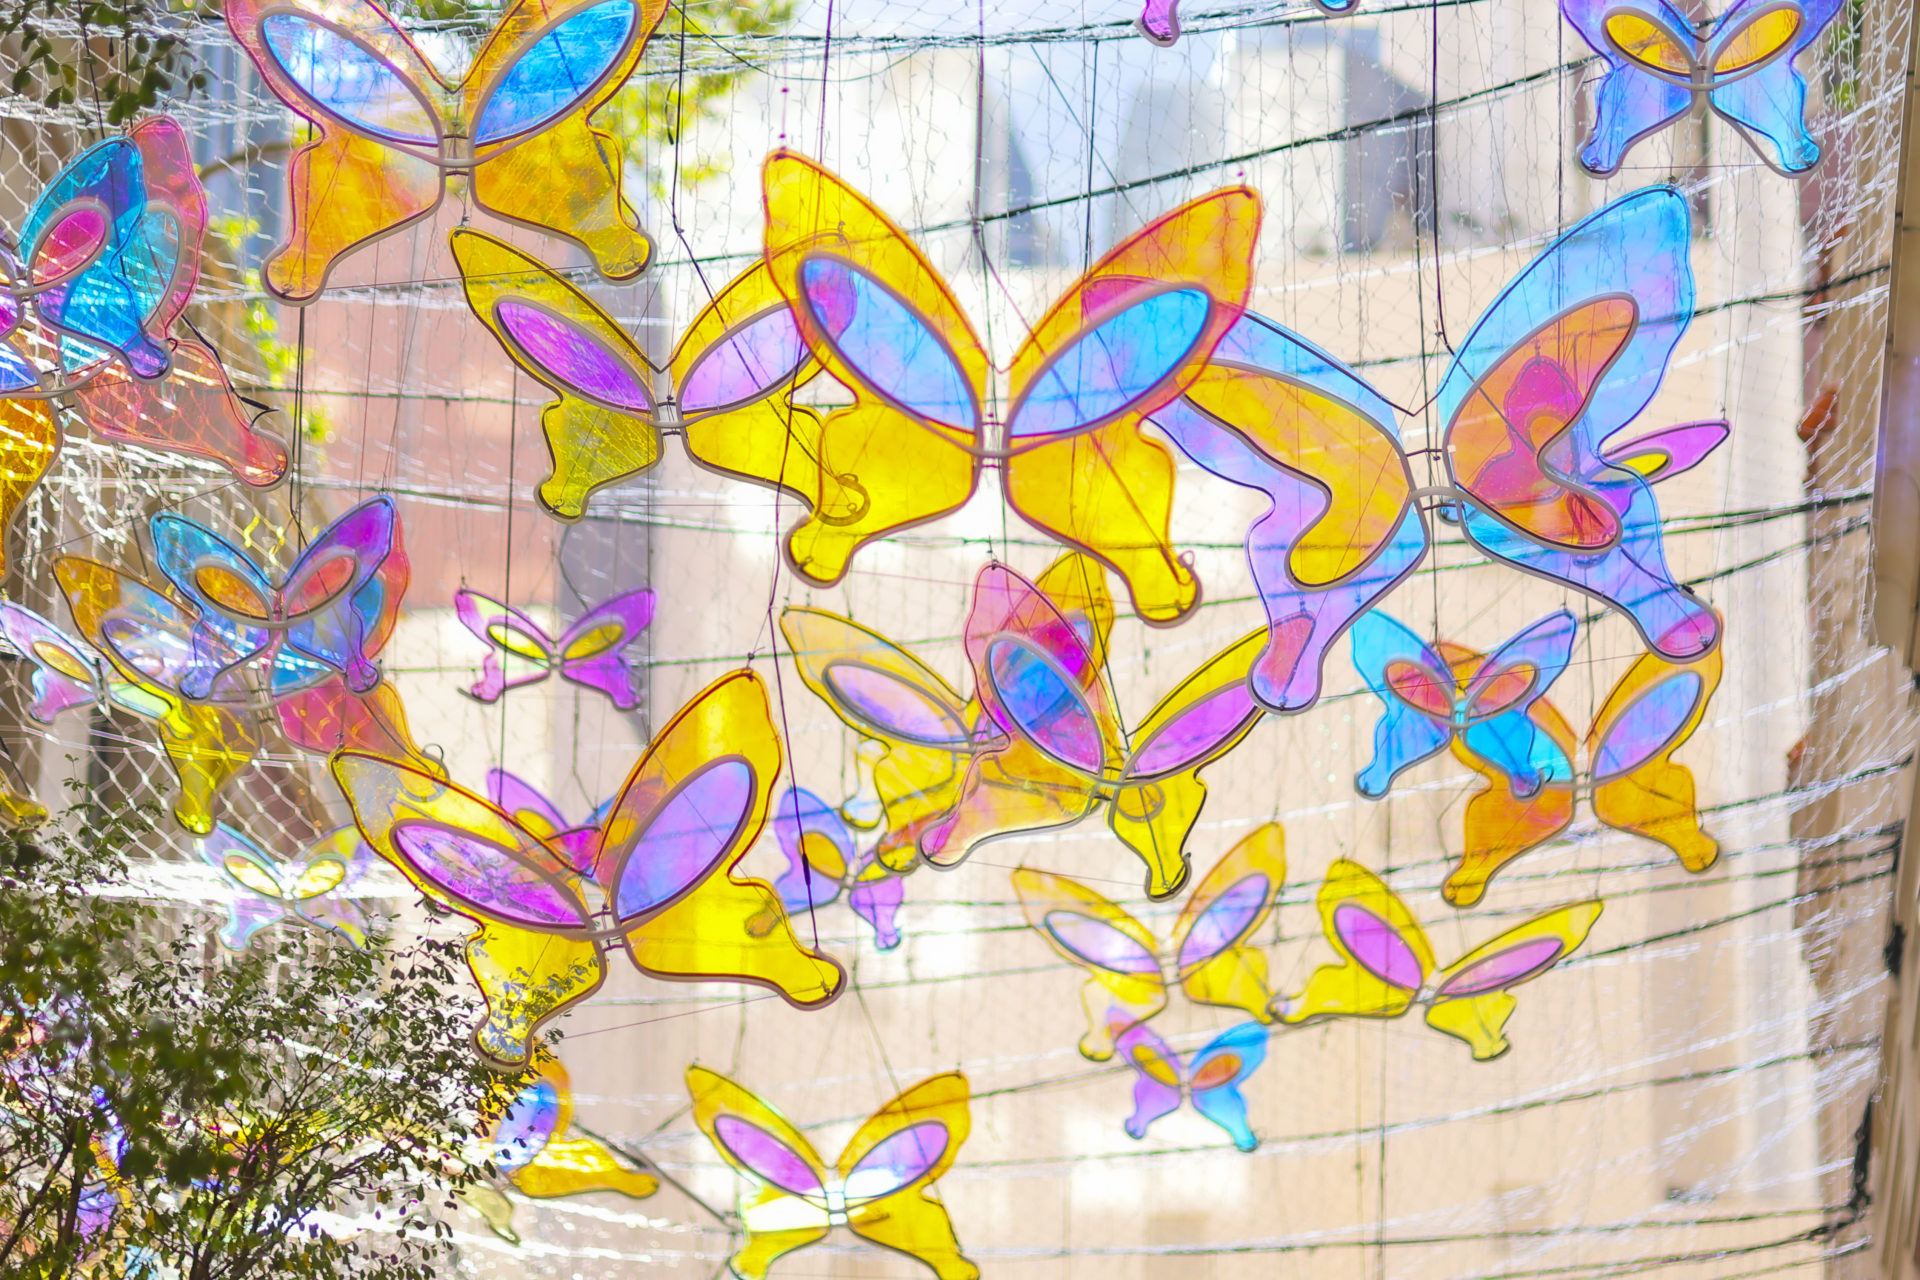 Butterflies of Hope "Lee Tung Avenue"